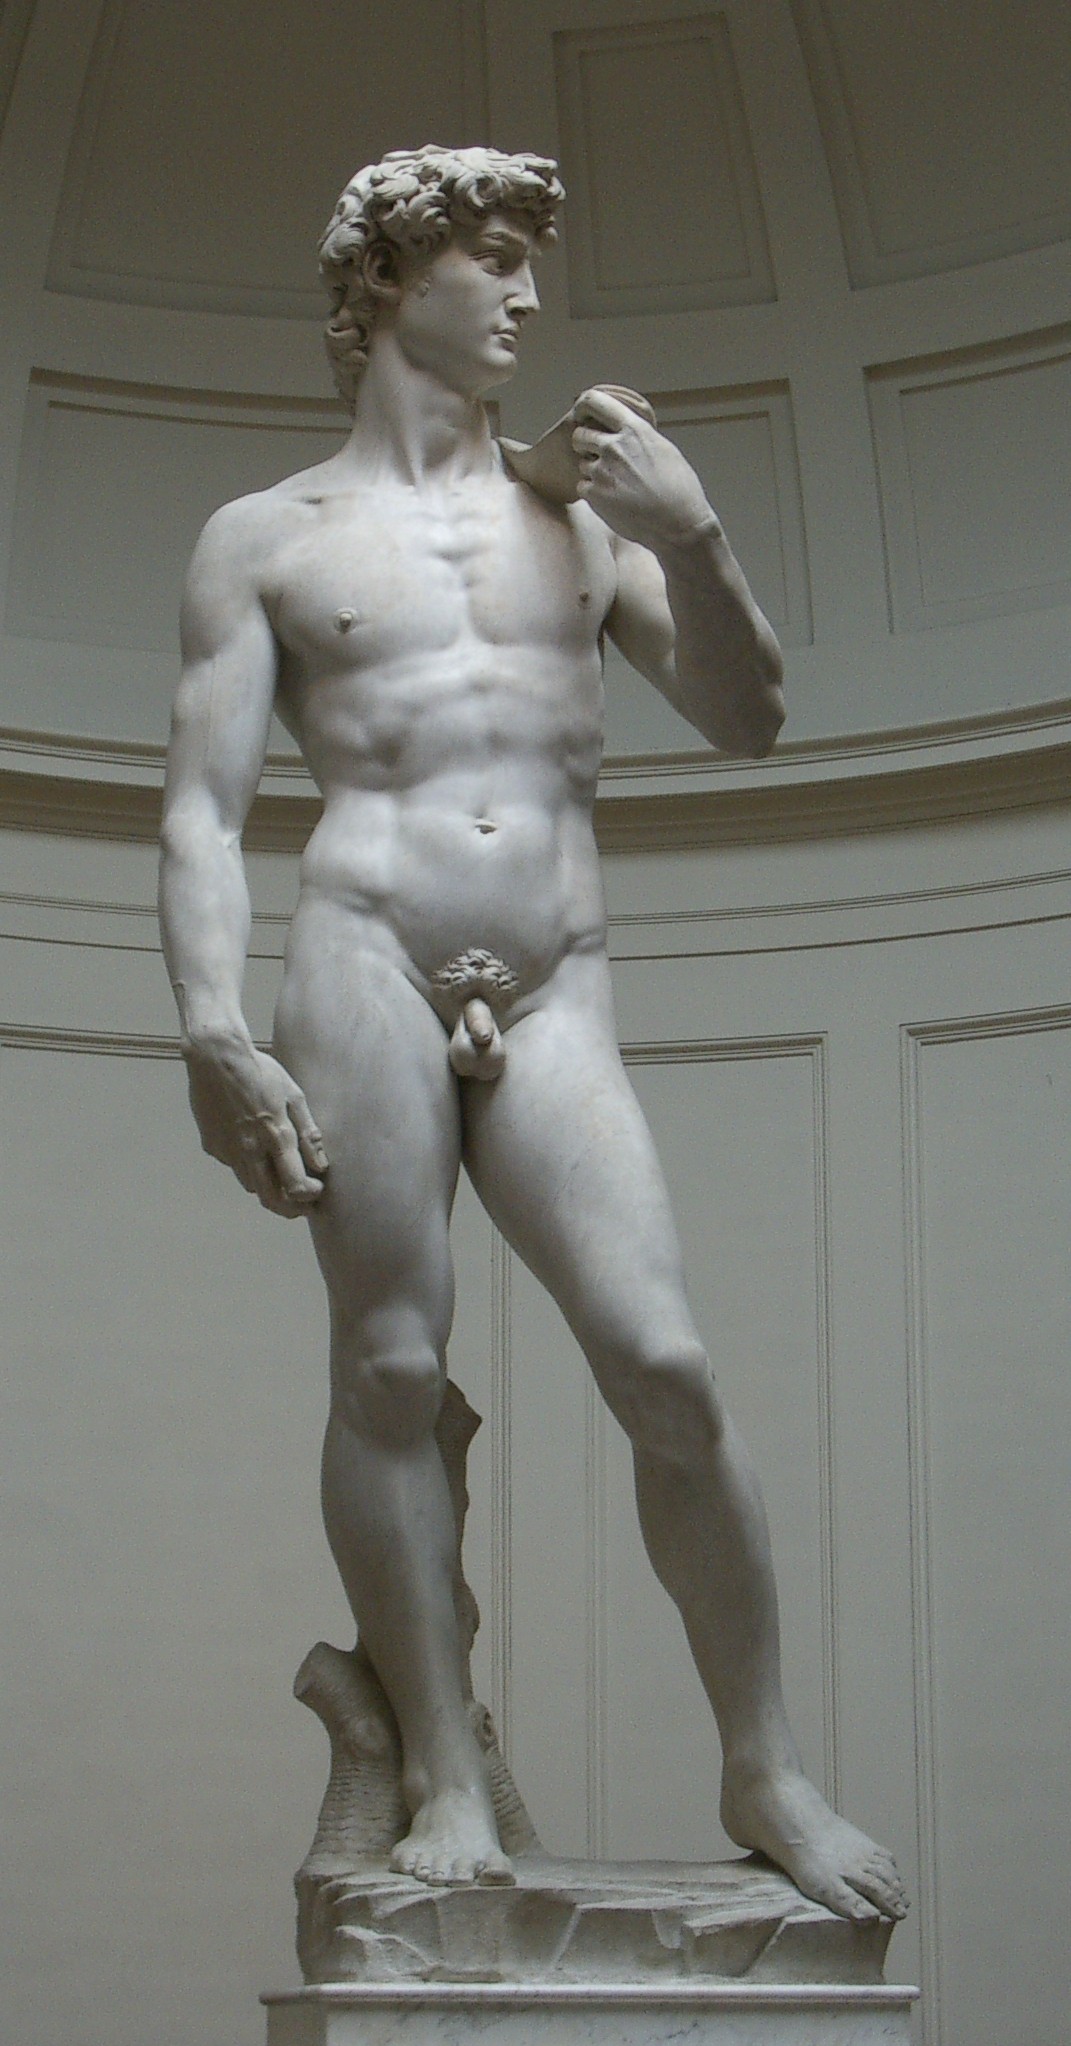 Davut by  Michelangelo - 1501–04 - 4.34 x 5.17 m 